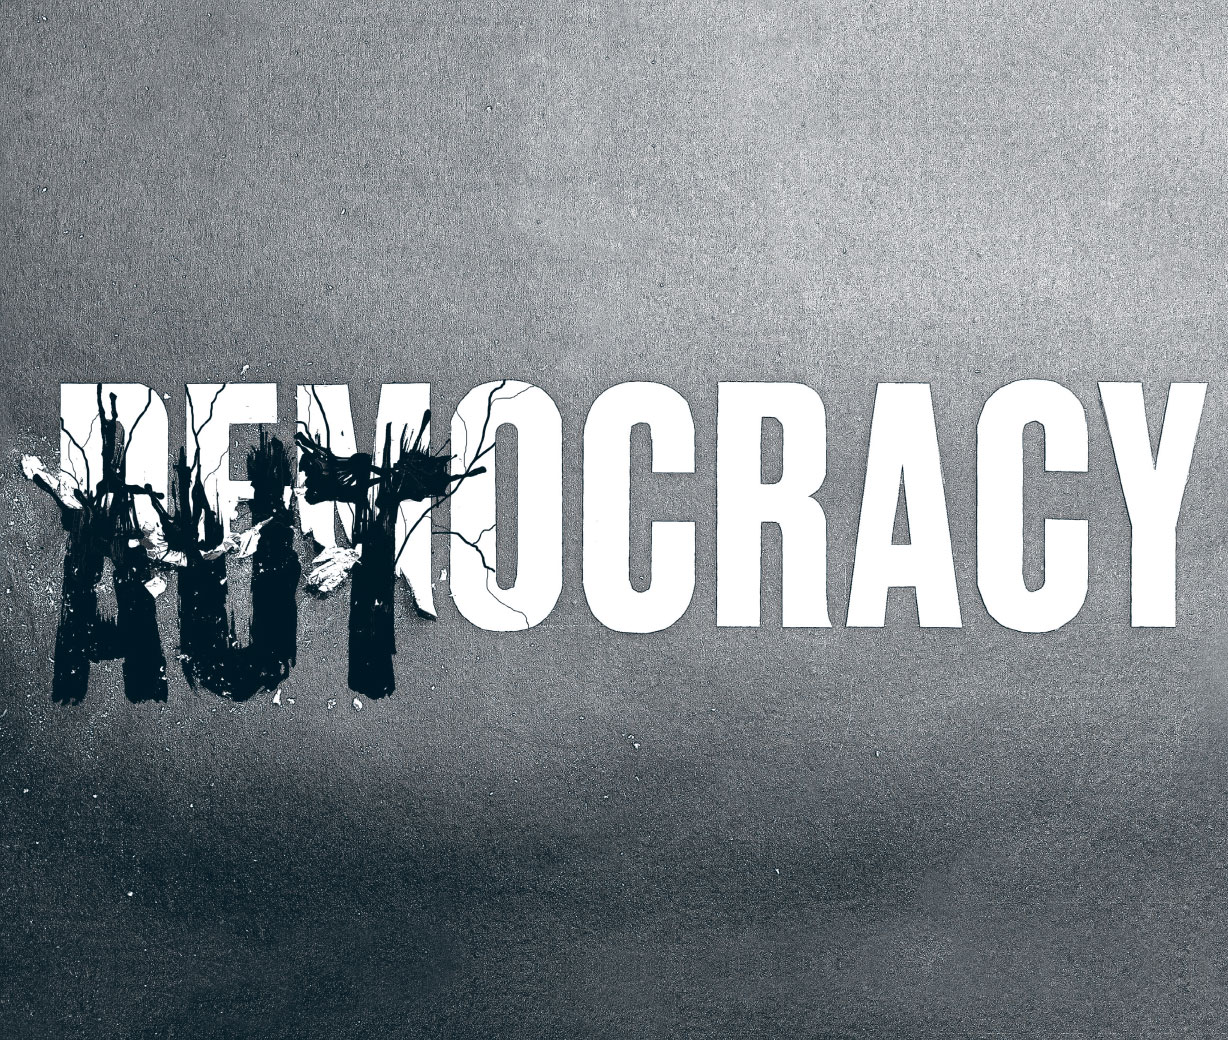 Oligarkia, vezokracia, plutokracia, kleptokracia dhe autokracia